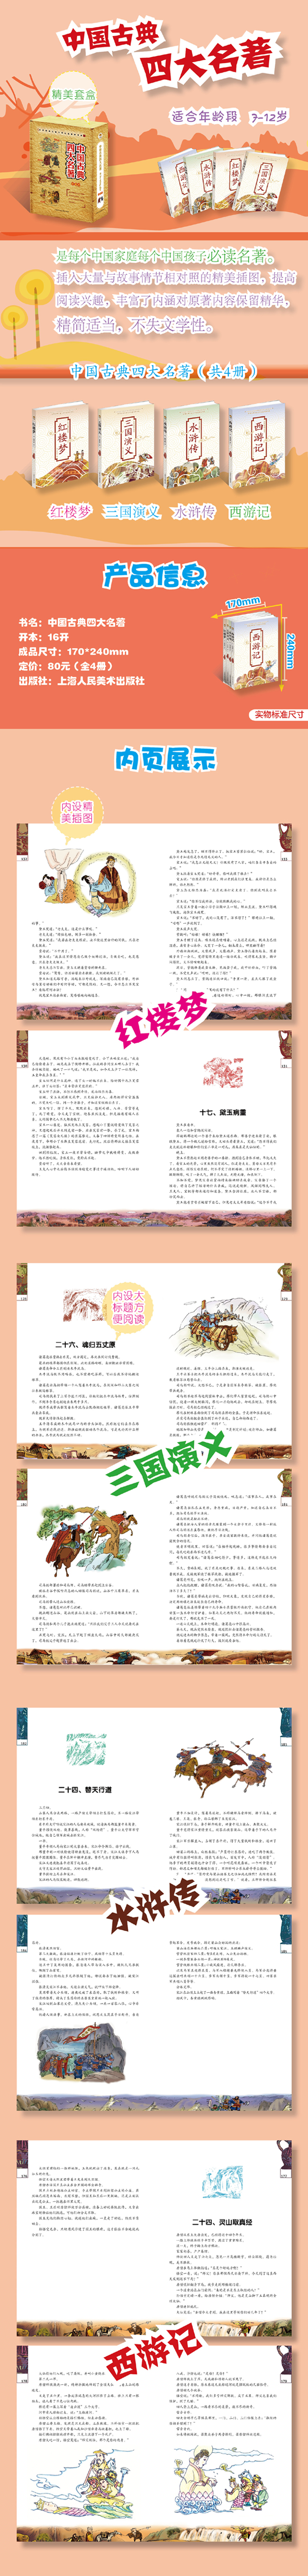 世界经典儿童文学套装书系:中国古典四大名著(彩图版)(套装共4册)